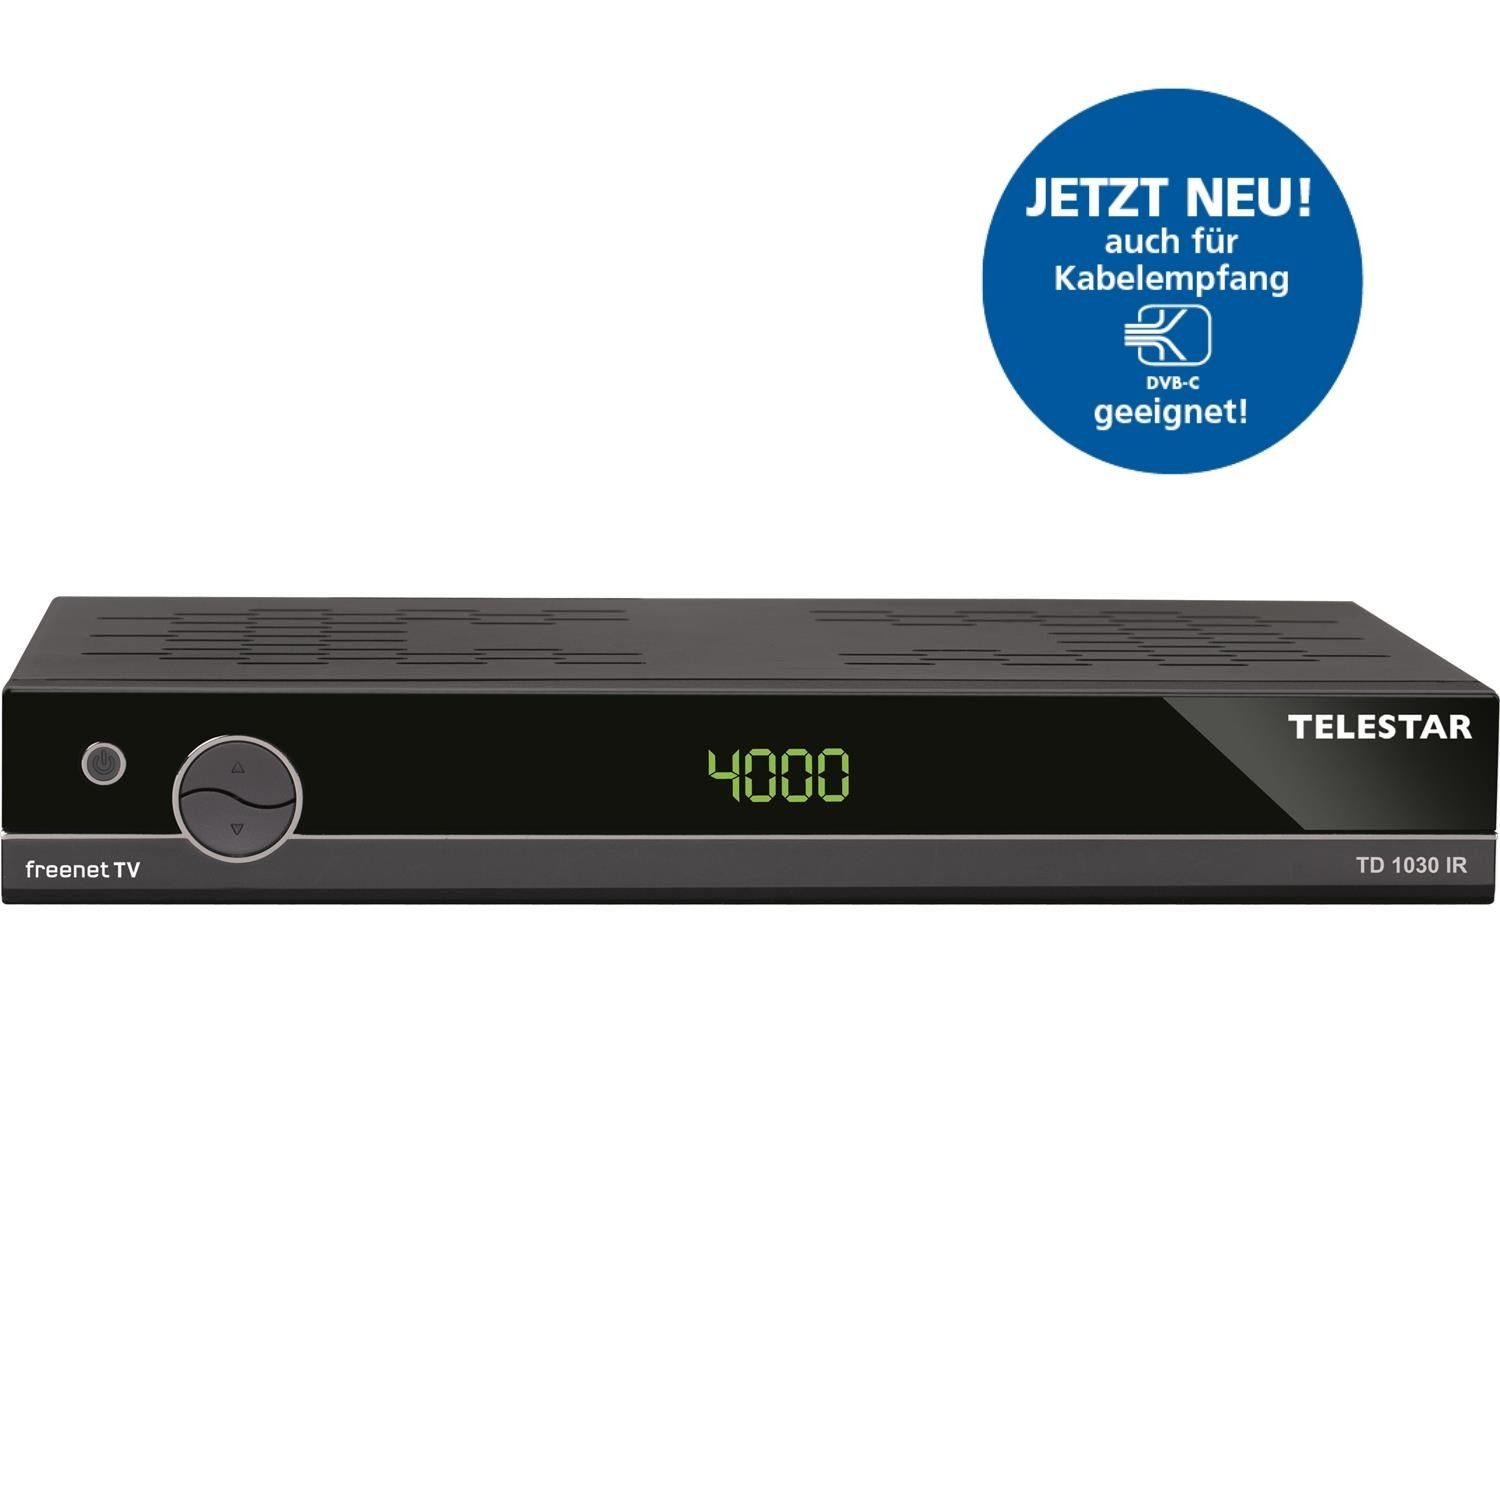 TELESTAR »TD 1030 IR DVB-T2 inkl. 3 Monate freenet TV¹ und DVB-C2 Kabel  Receiver« Satellitenreceiver online kaufen | OTTO